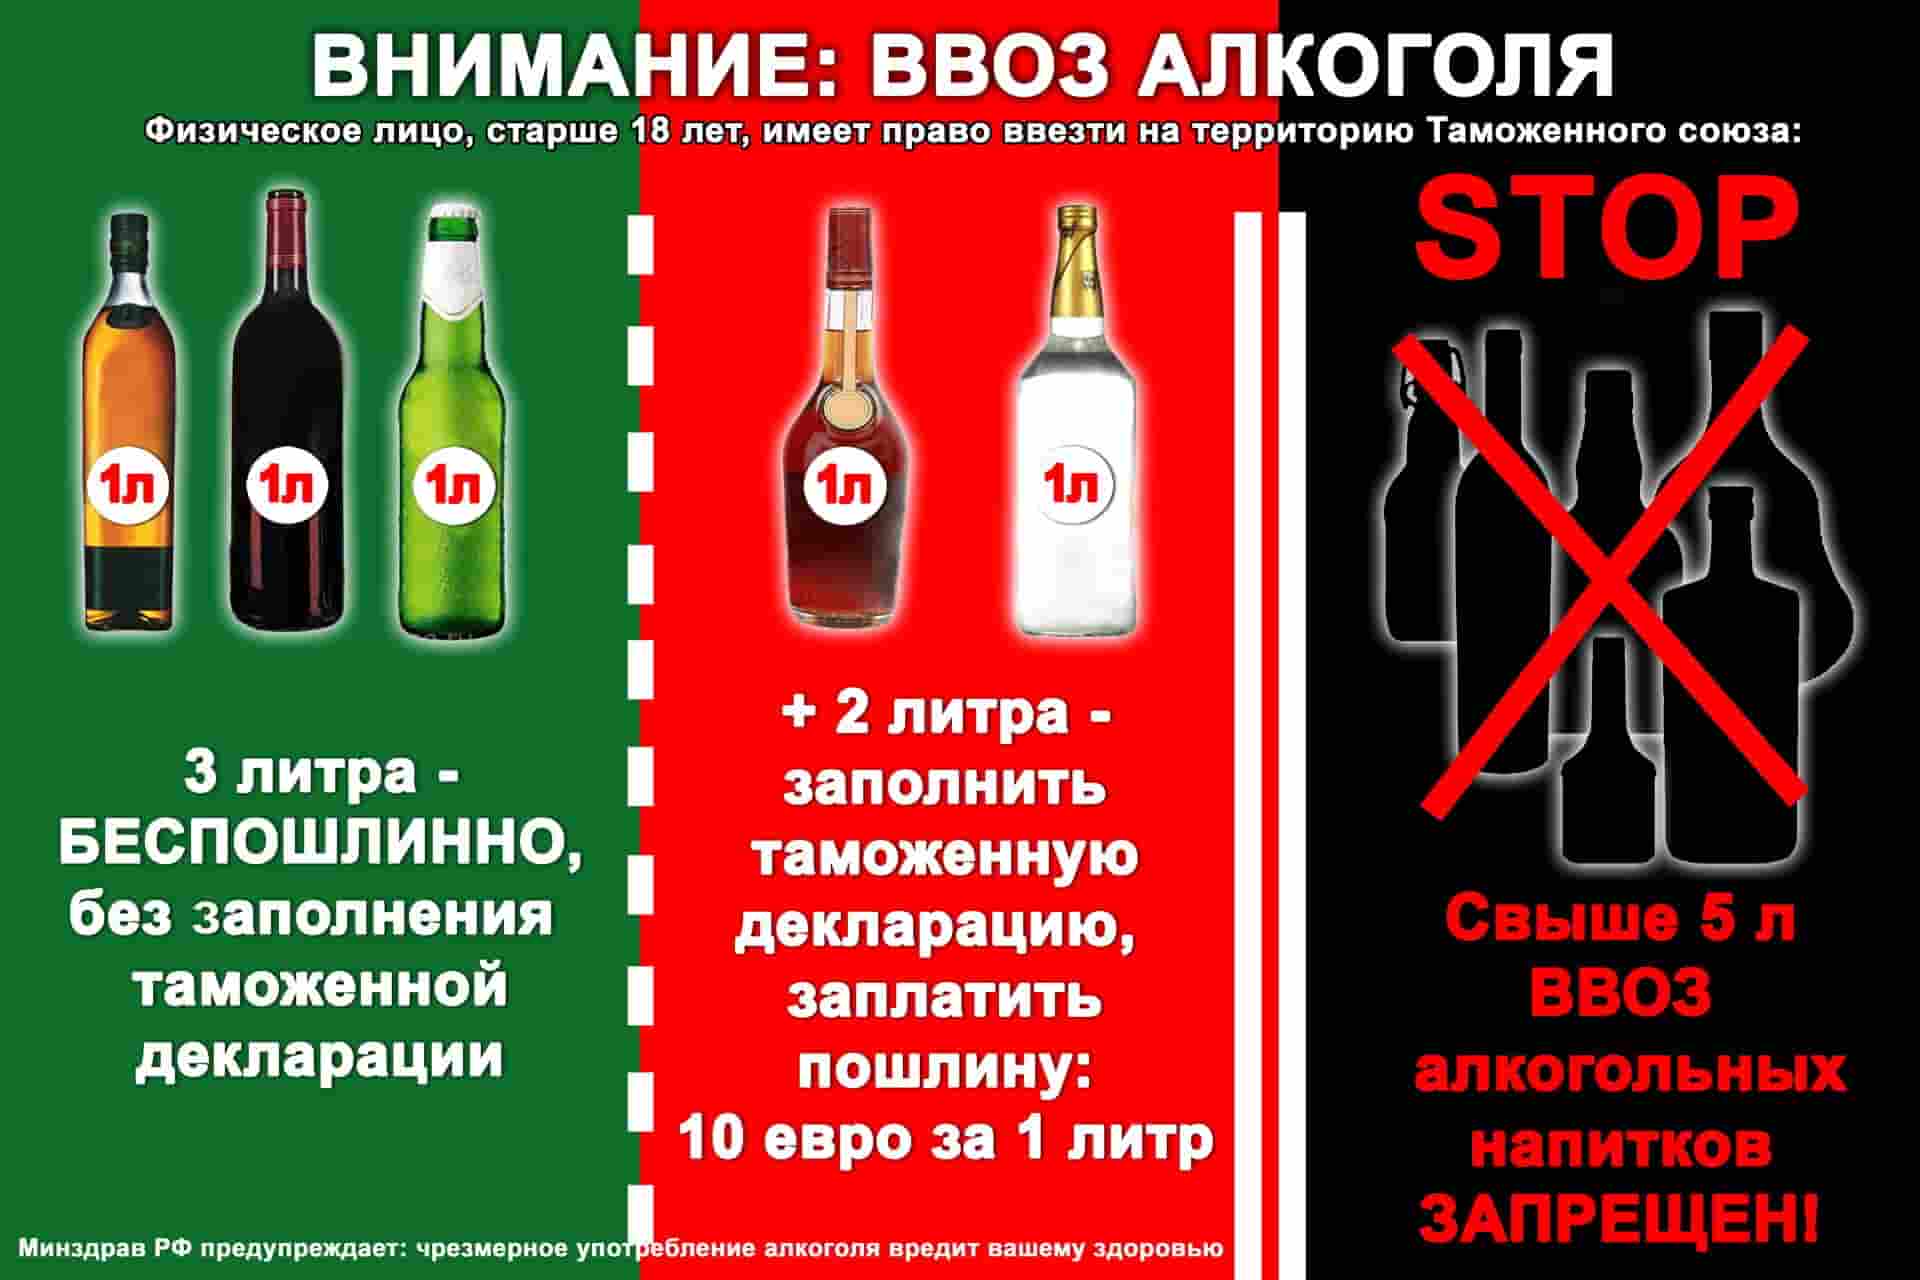 Сколько вина и прочих крепких алкогольных напитков можно вывезти из грузии?